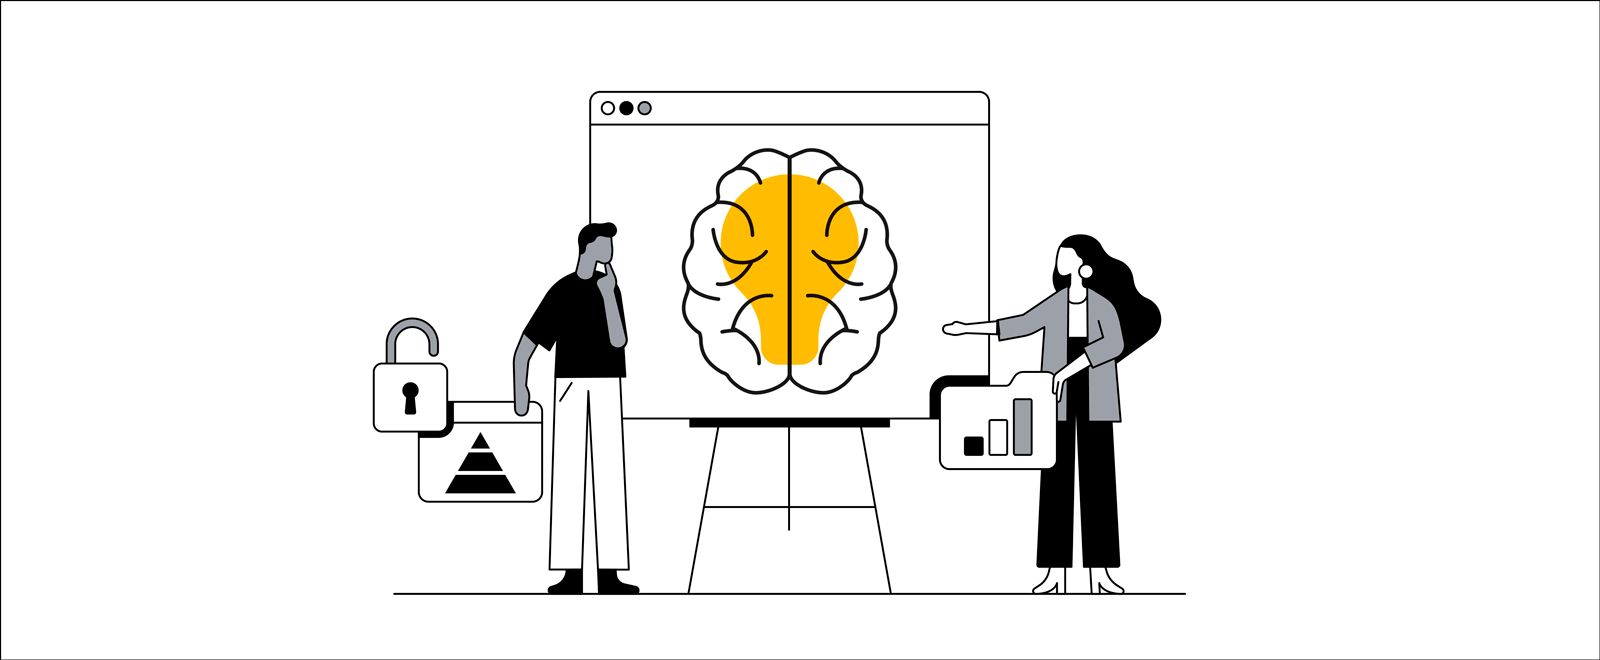 Beyin ile ampul resmi görüntülenen bir ekrana bakan ve böylece, "reklam zekası" hakkında düşündükleri anlaşılan erkek ve kadın karakterlerin yer aldığı görsel.